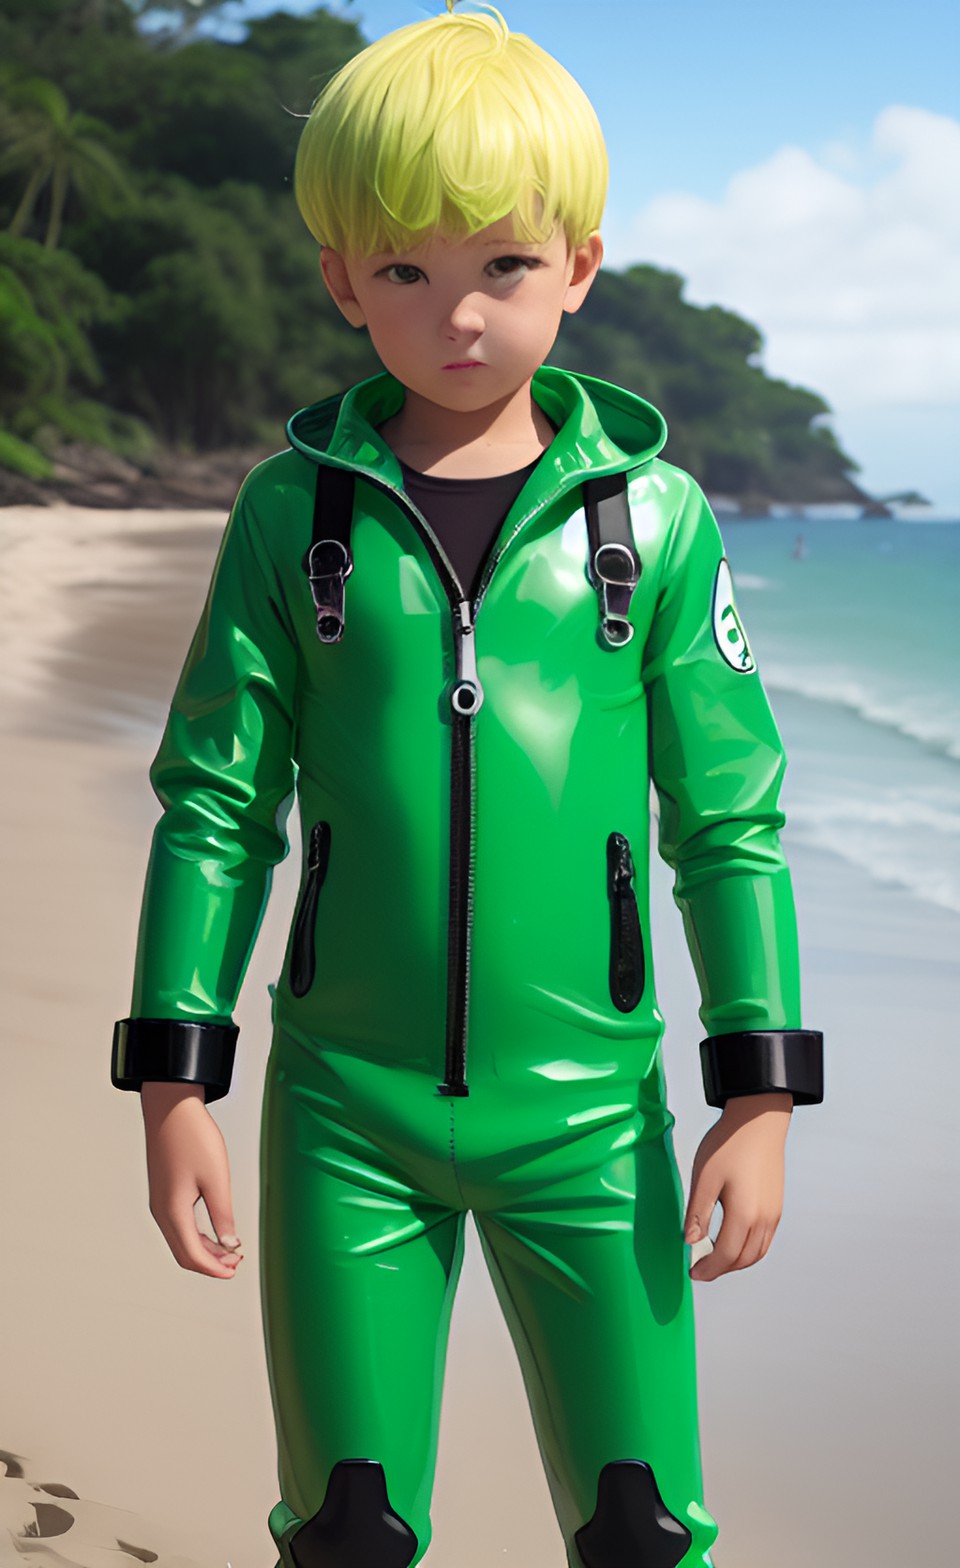 Green rubber boy